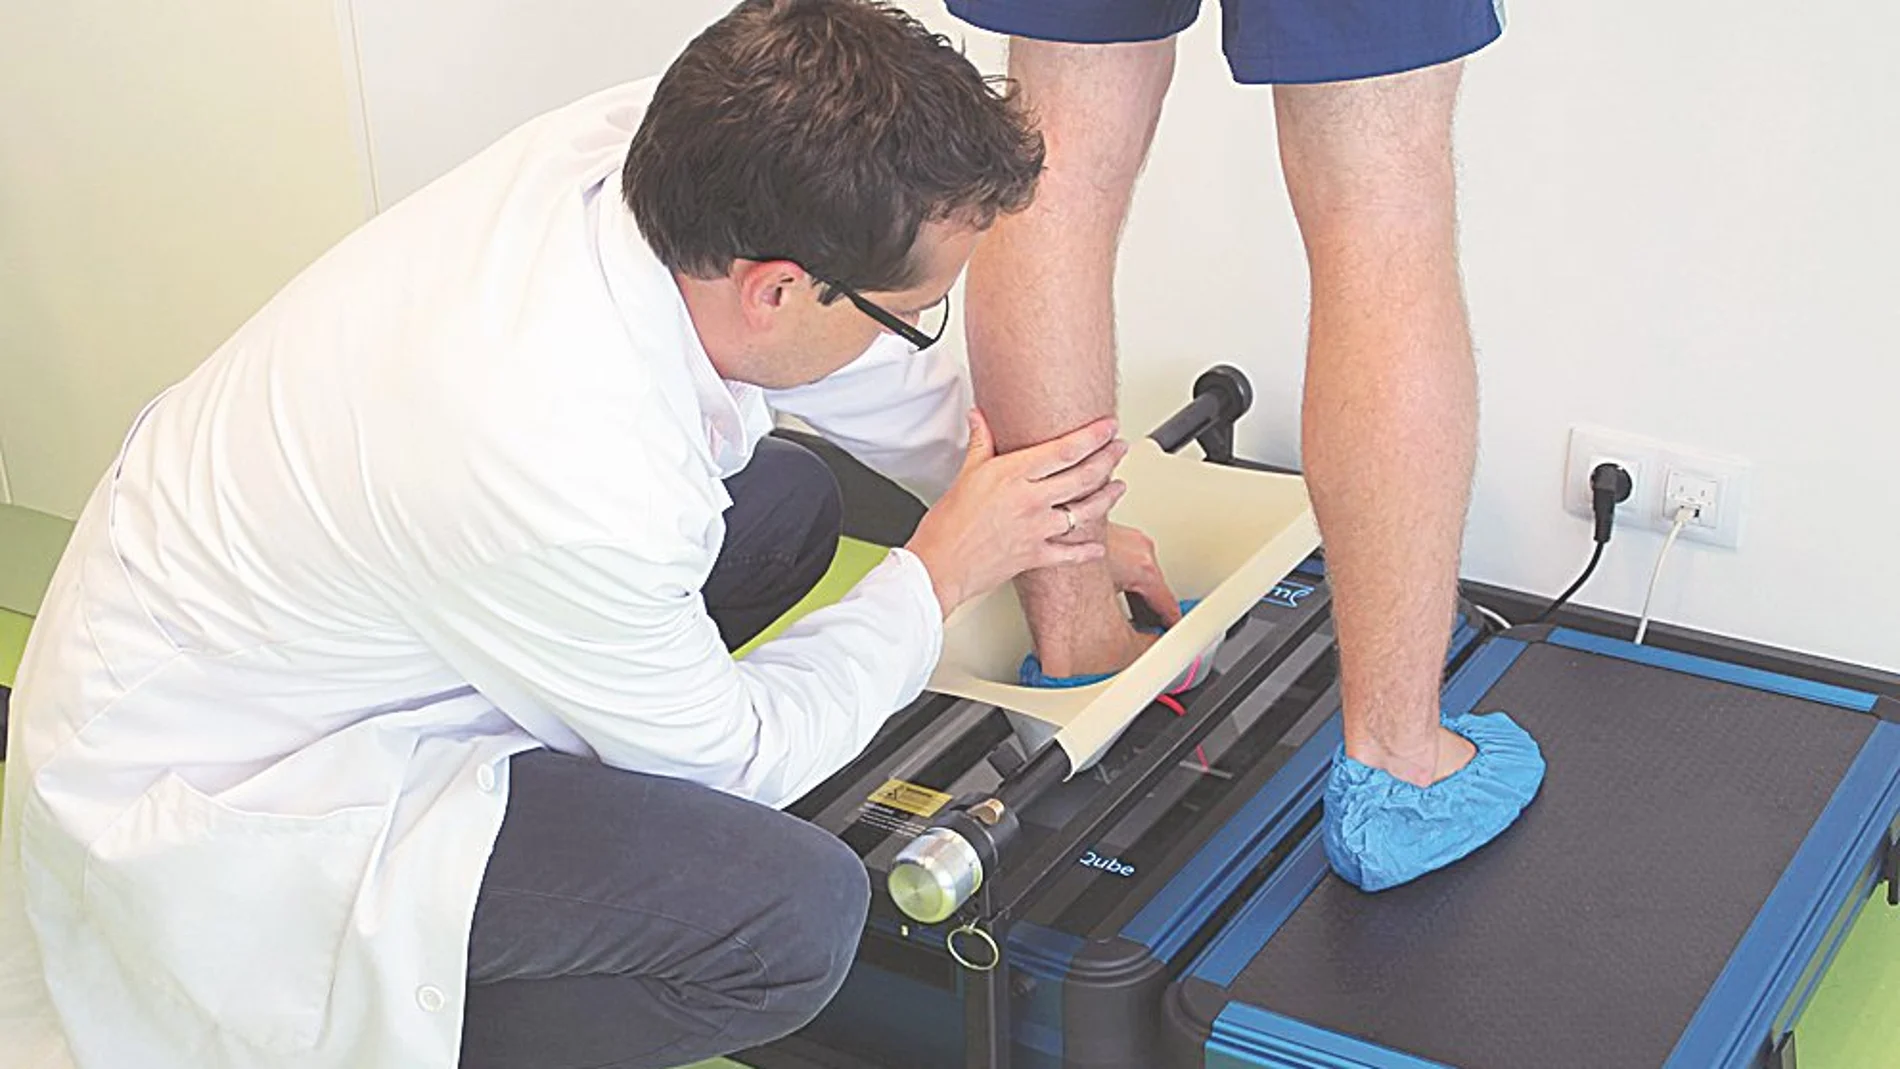 El estudio biomecánico de la marcha es un conjunto de pruebas diagnósticas que permite conocer y prevenir posibles patologías y lesiones del pie